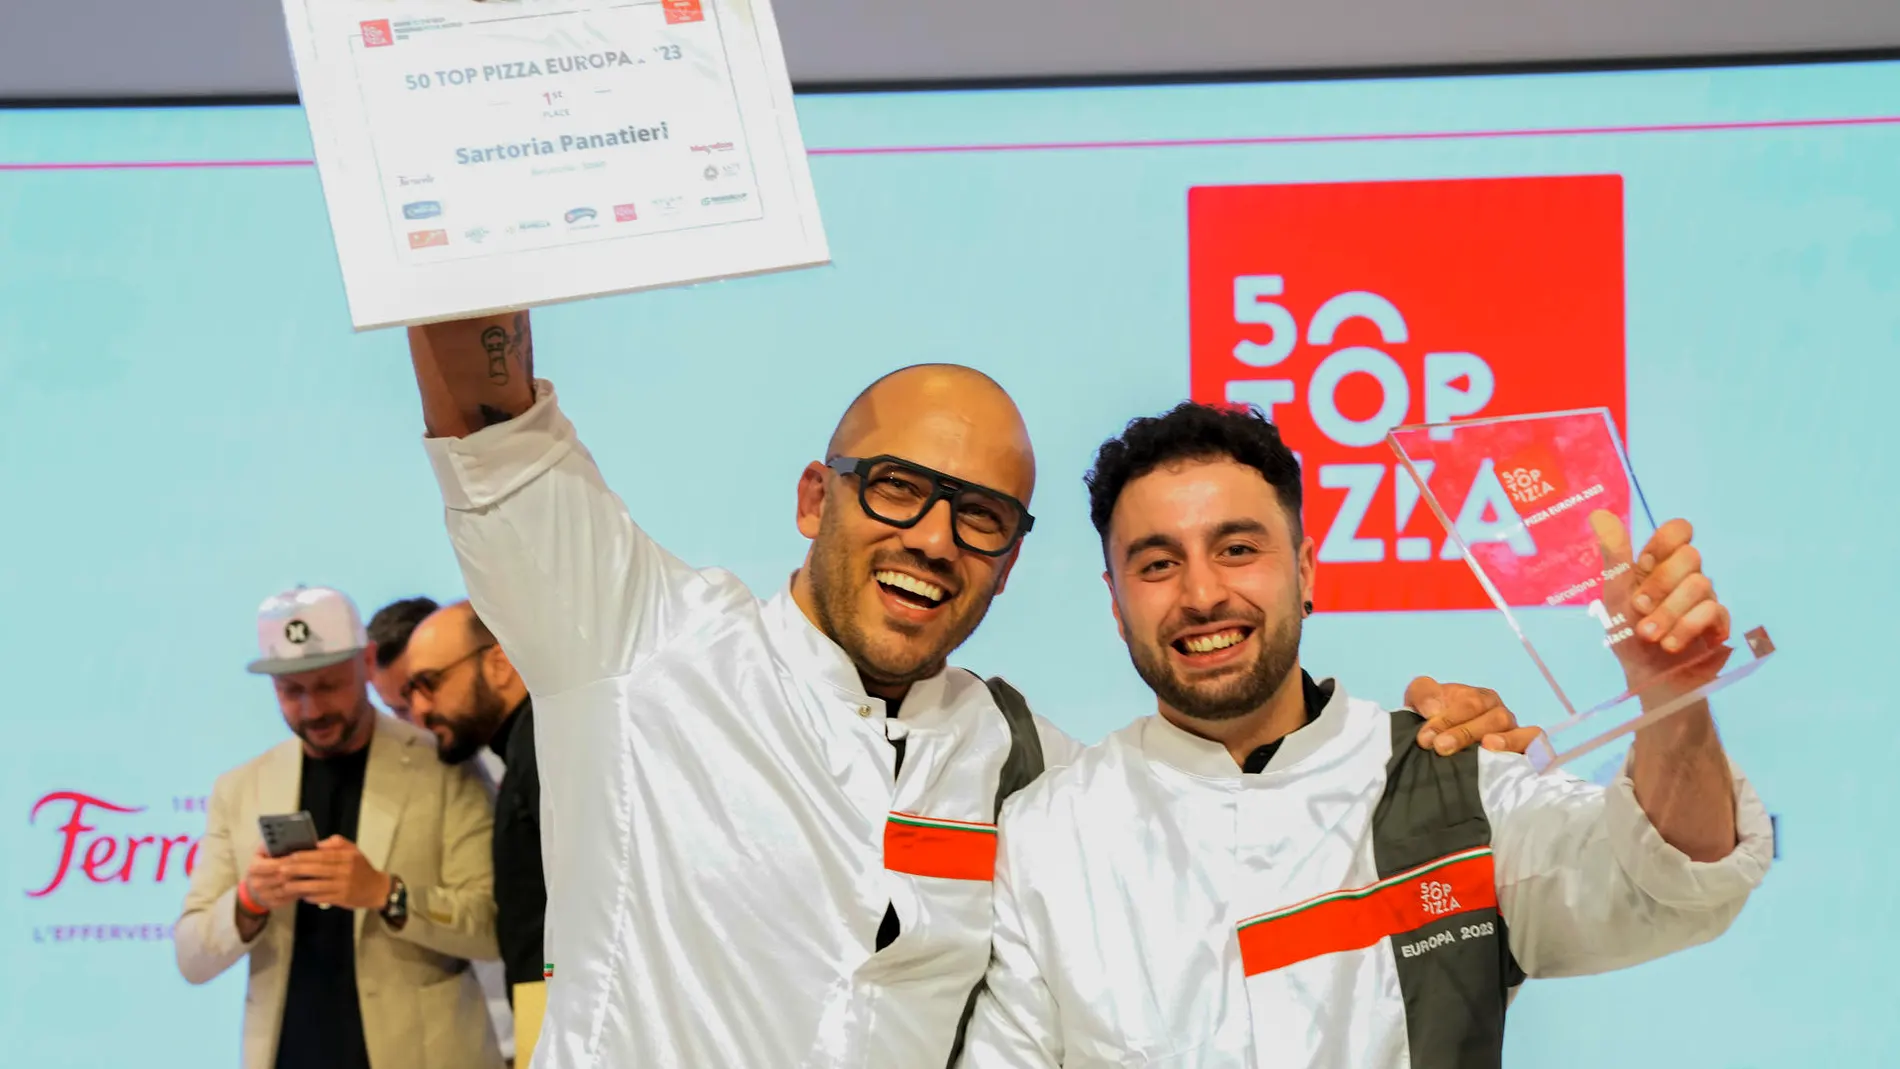 Rafa Panatieri y Jorge Sastre de la pizzería Sartoria Panatieri posan tras ganar el premio de mejor pizzería durante la gala 50 Top Pizza